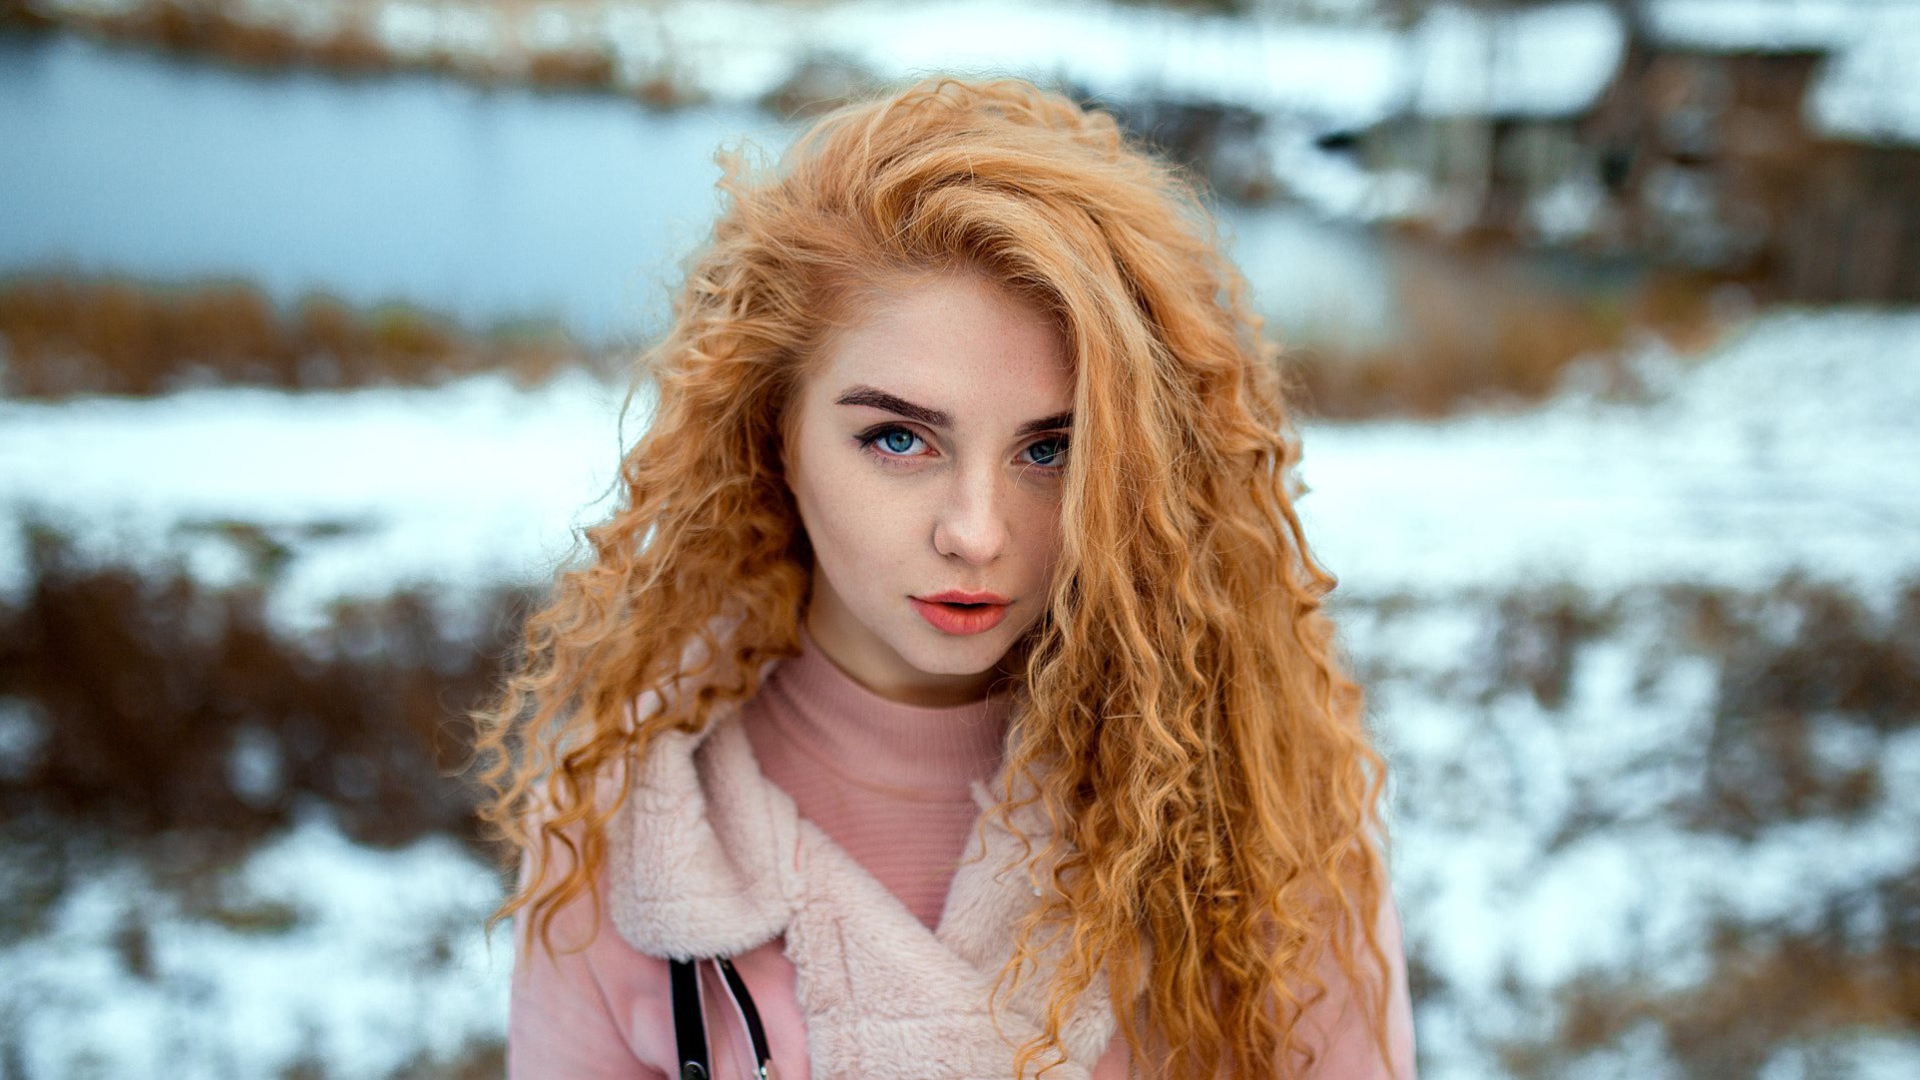 Красивая рыжеволосая девушка с голубыми глазами зимой